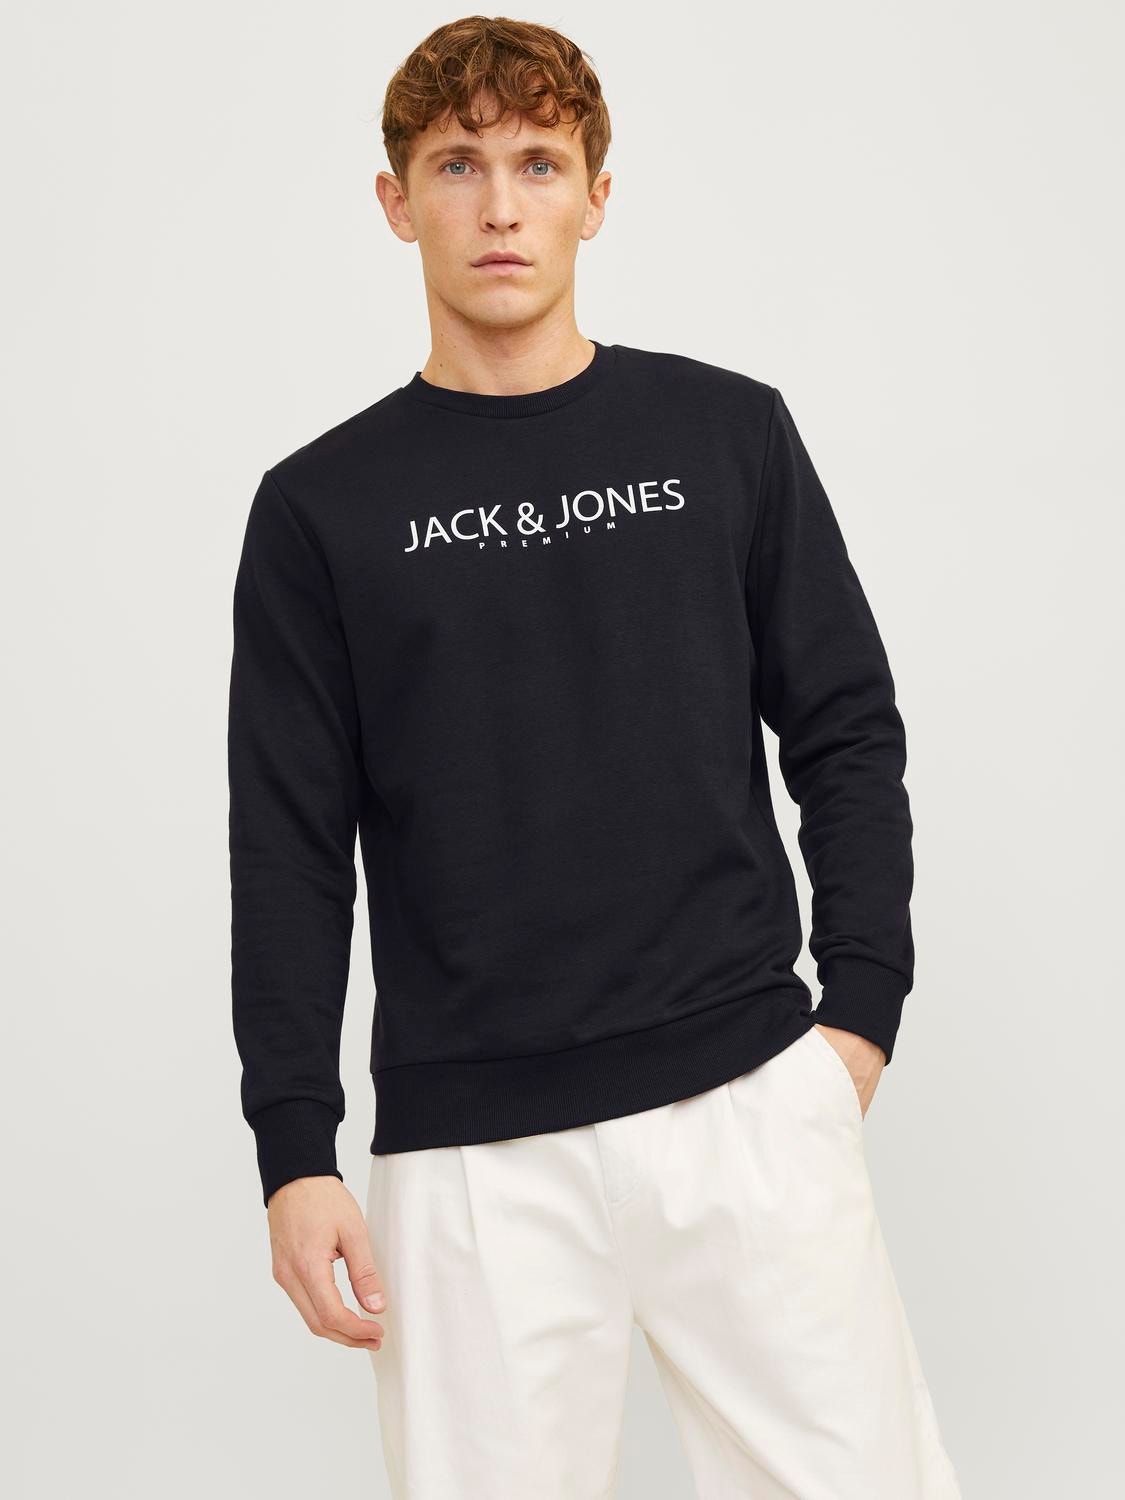 Jack & Jones Gedruckt Sweatshirt mit Rundhals -Black Onyx - 12256972